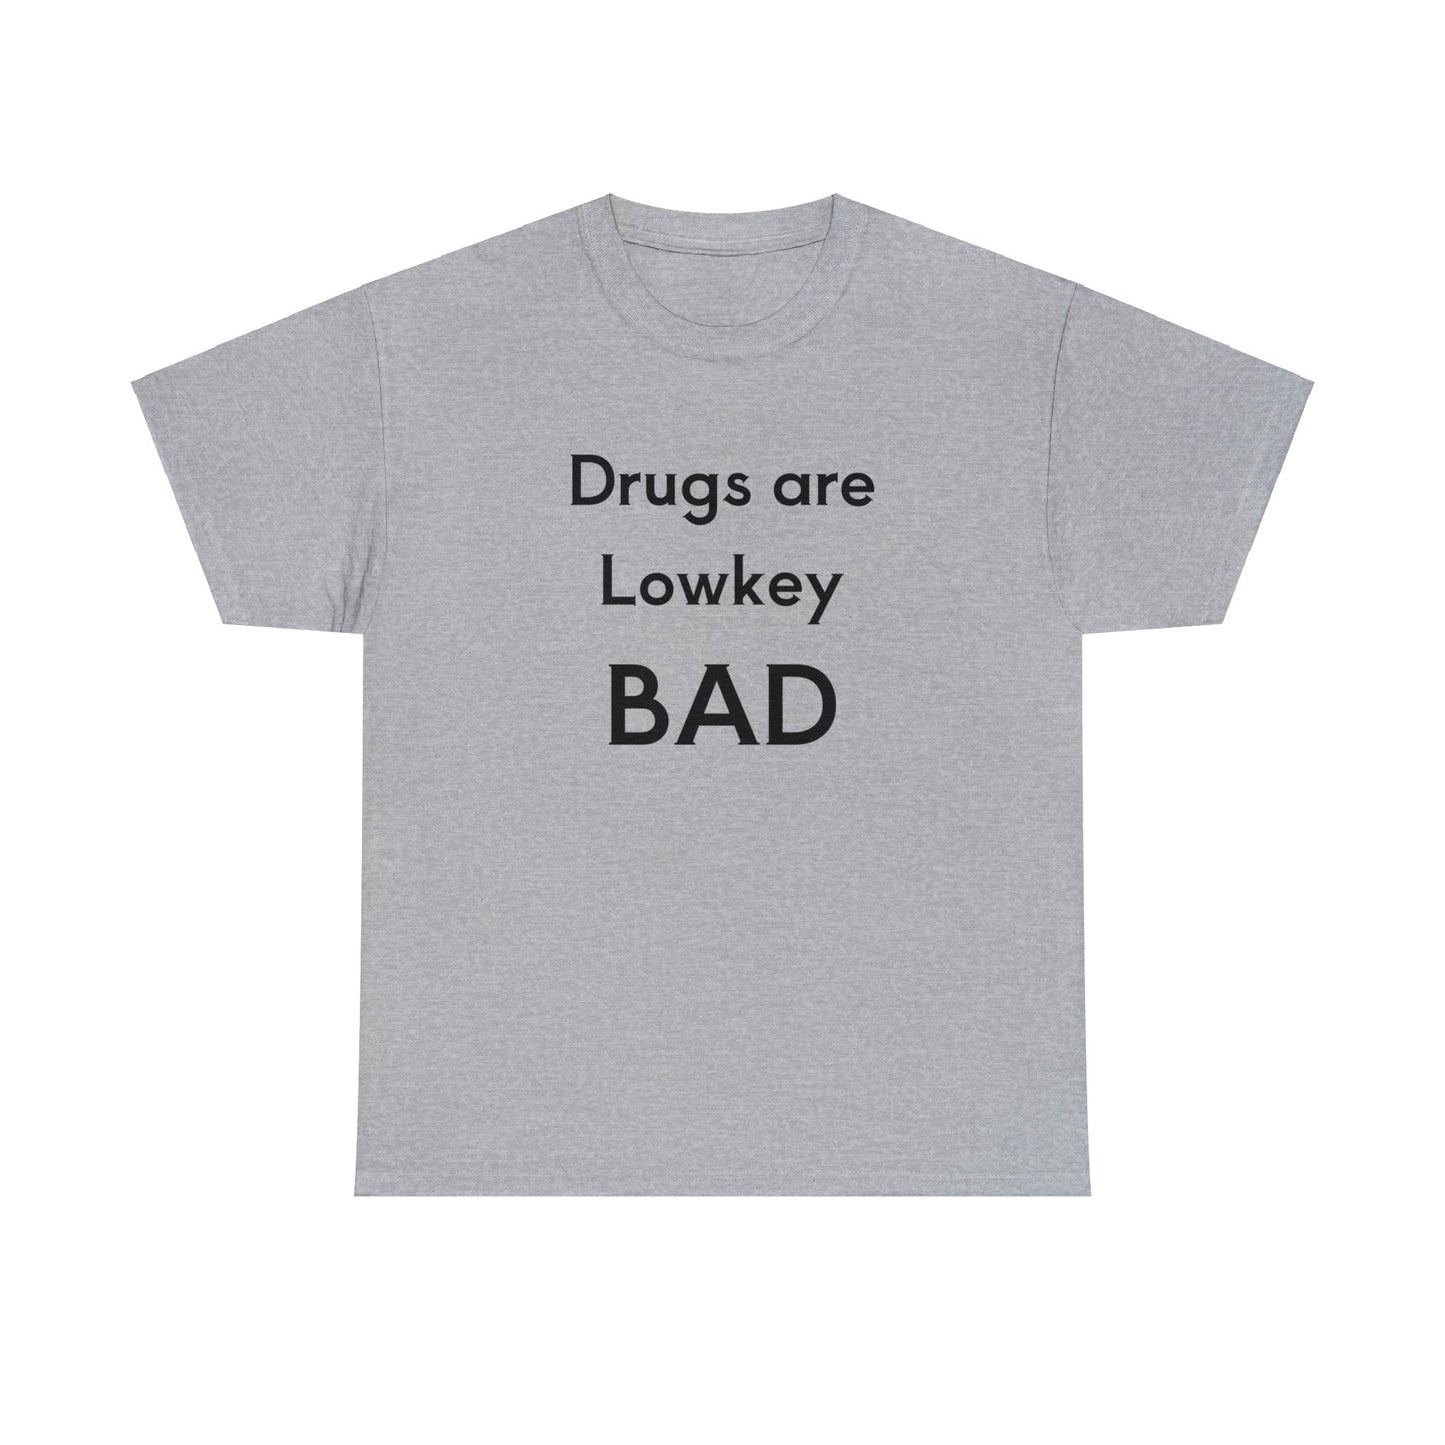 Drugs are BAD Tee